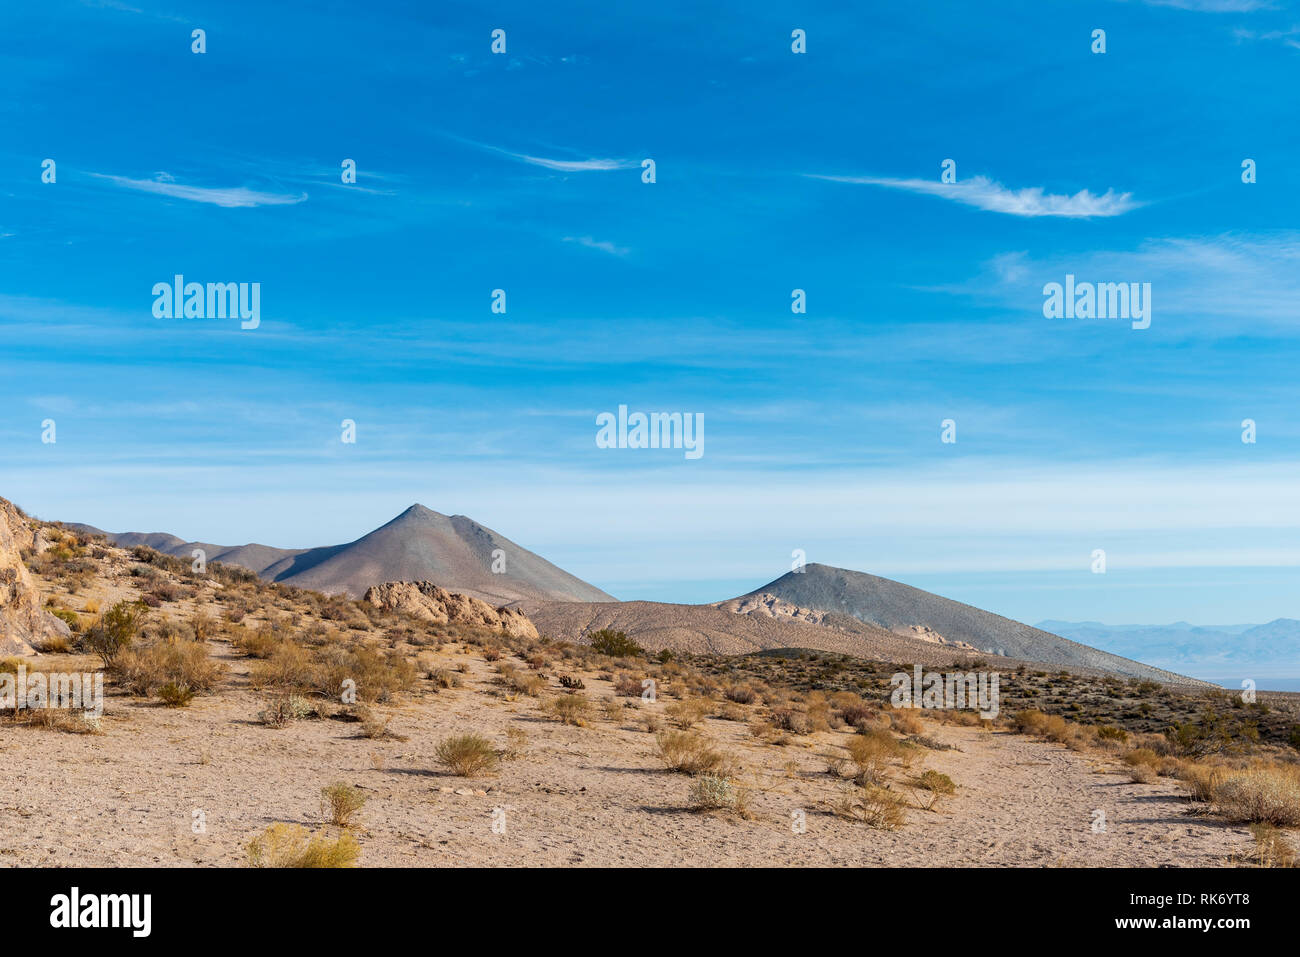 Colline du désert de sable avec des rochers et arbustes avec montagnes stériles au-delà sous ciel bleu avec des nuages. Banque D'Images